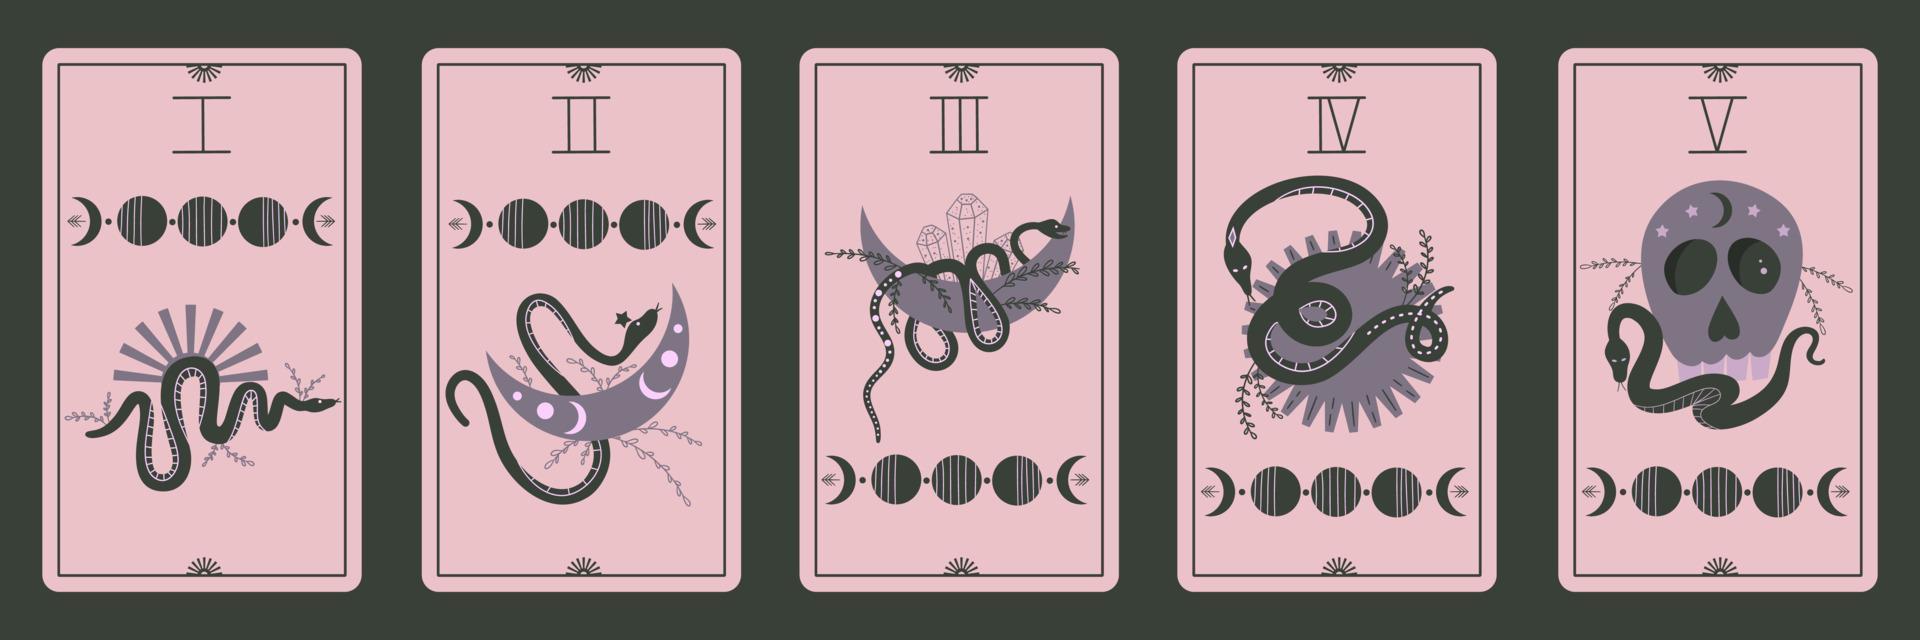 cartas de tarot con fases serpientes y calavera. Magia celestial para ocultismo adivinación.